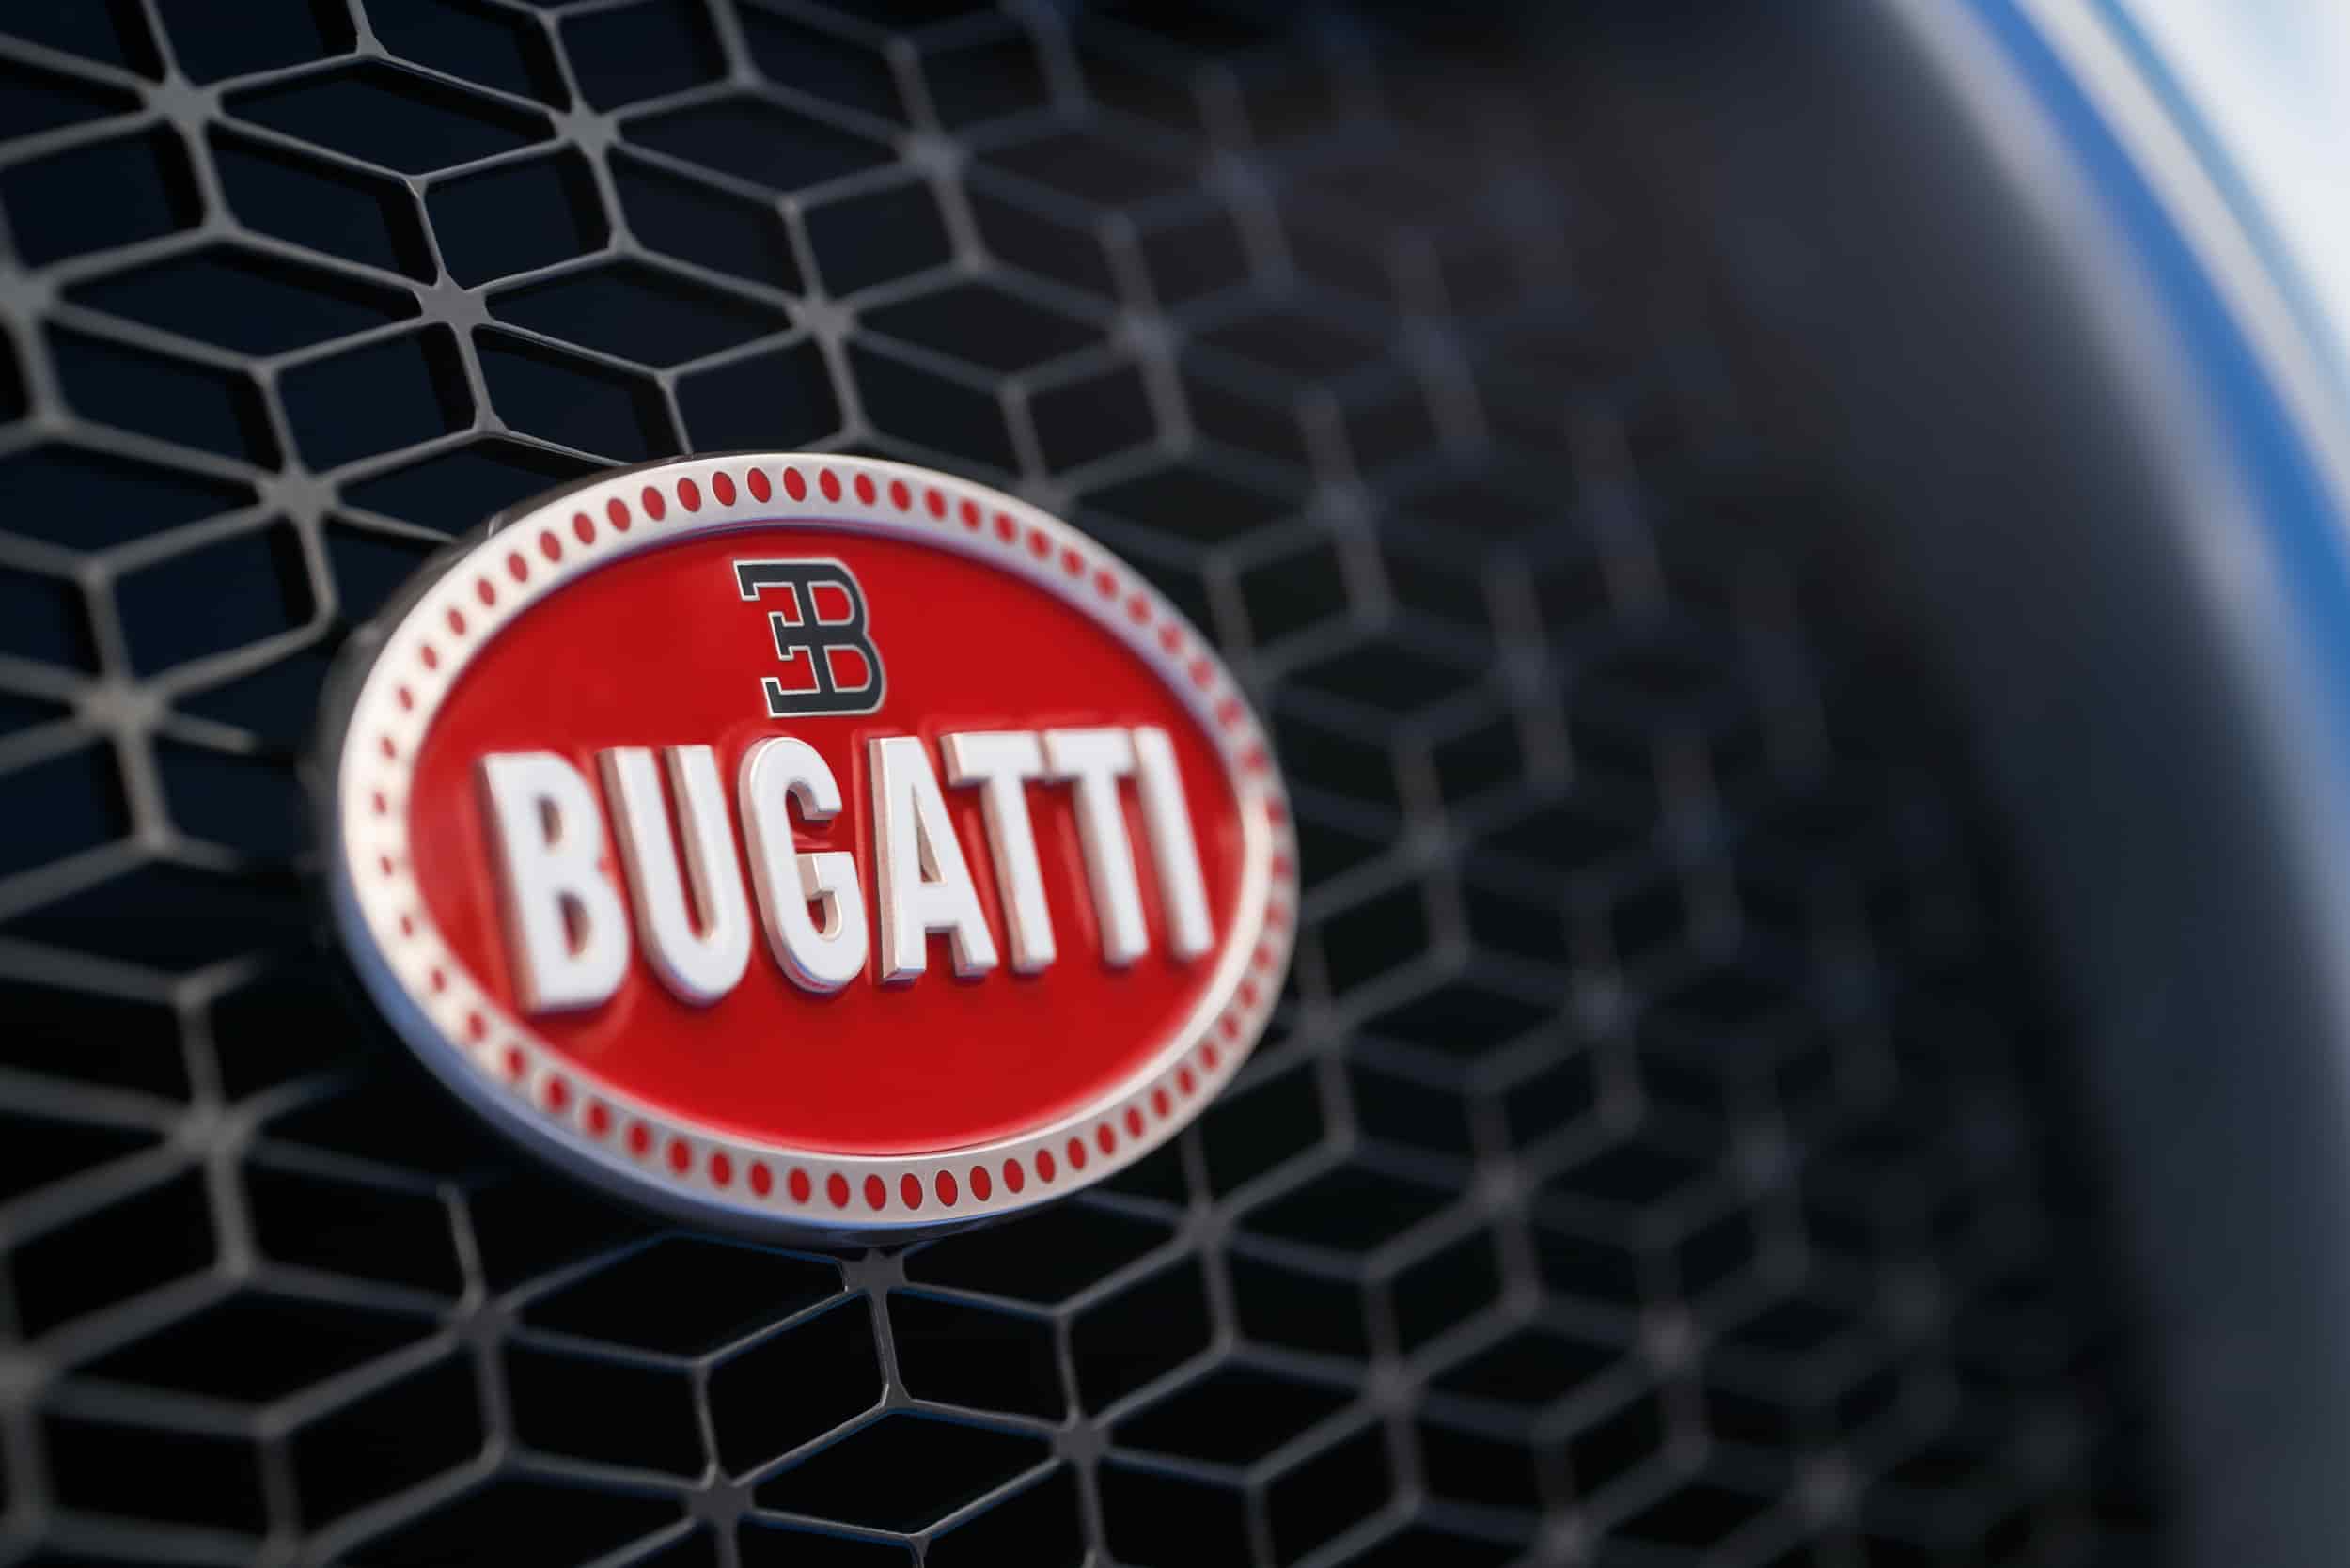 Bugatti et ses voitures de sport luxueuses